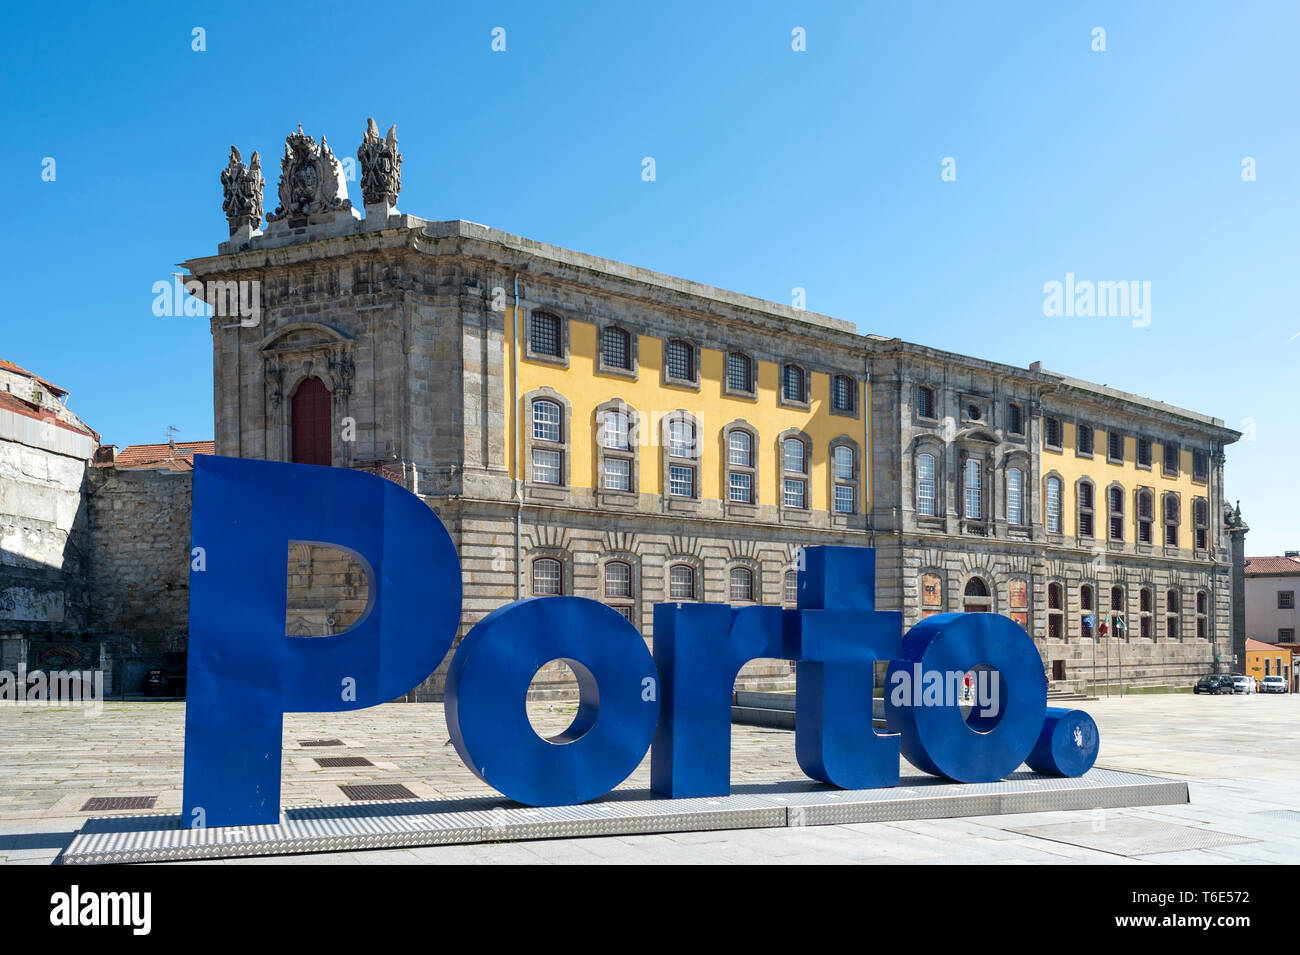 Centro Portugues de Fotografia in Porto, with large blue Porto sign in the foreground. Originally a prison. Stock Photo